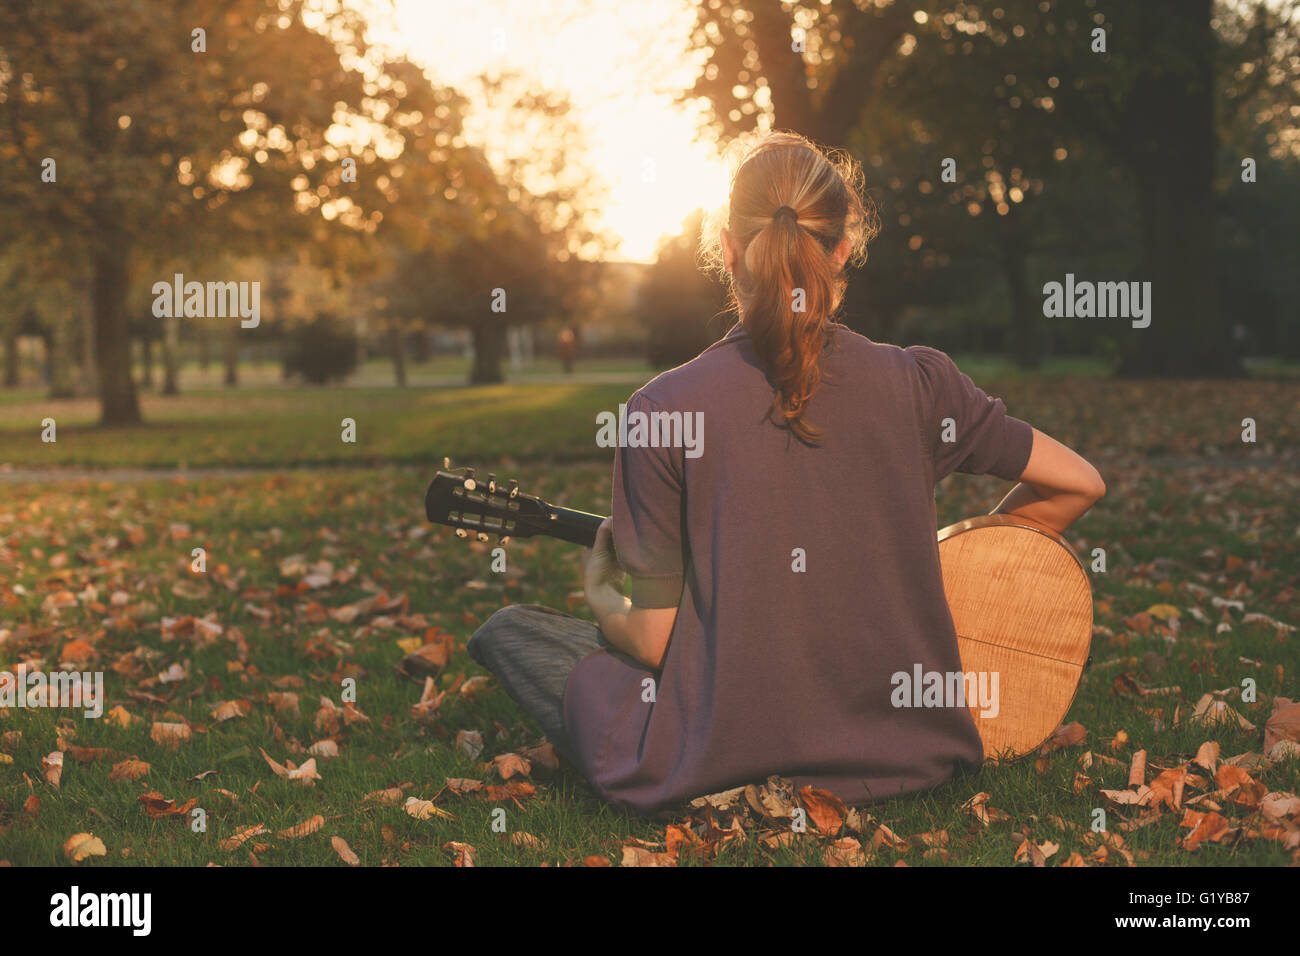 Vista trasera de una joven sentada sobre el césped y tocando la guitarra en el parque al atardecer Foto de stock